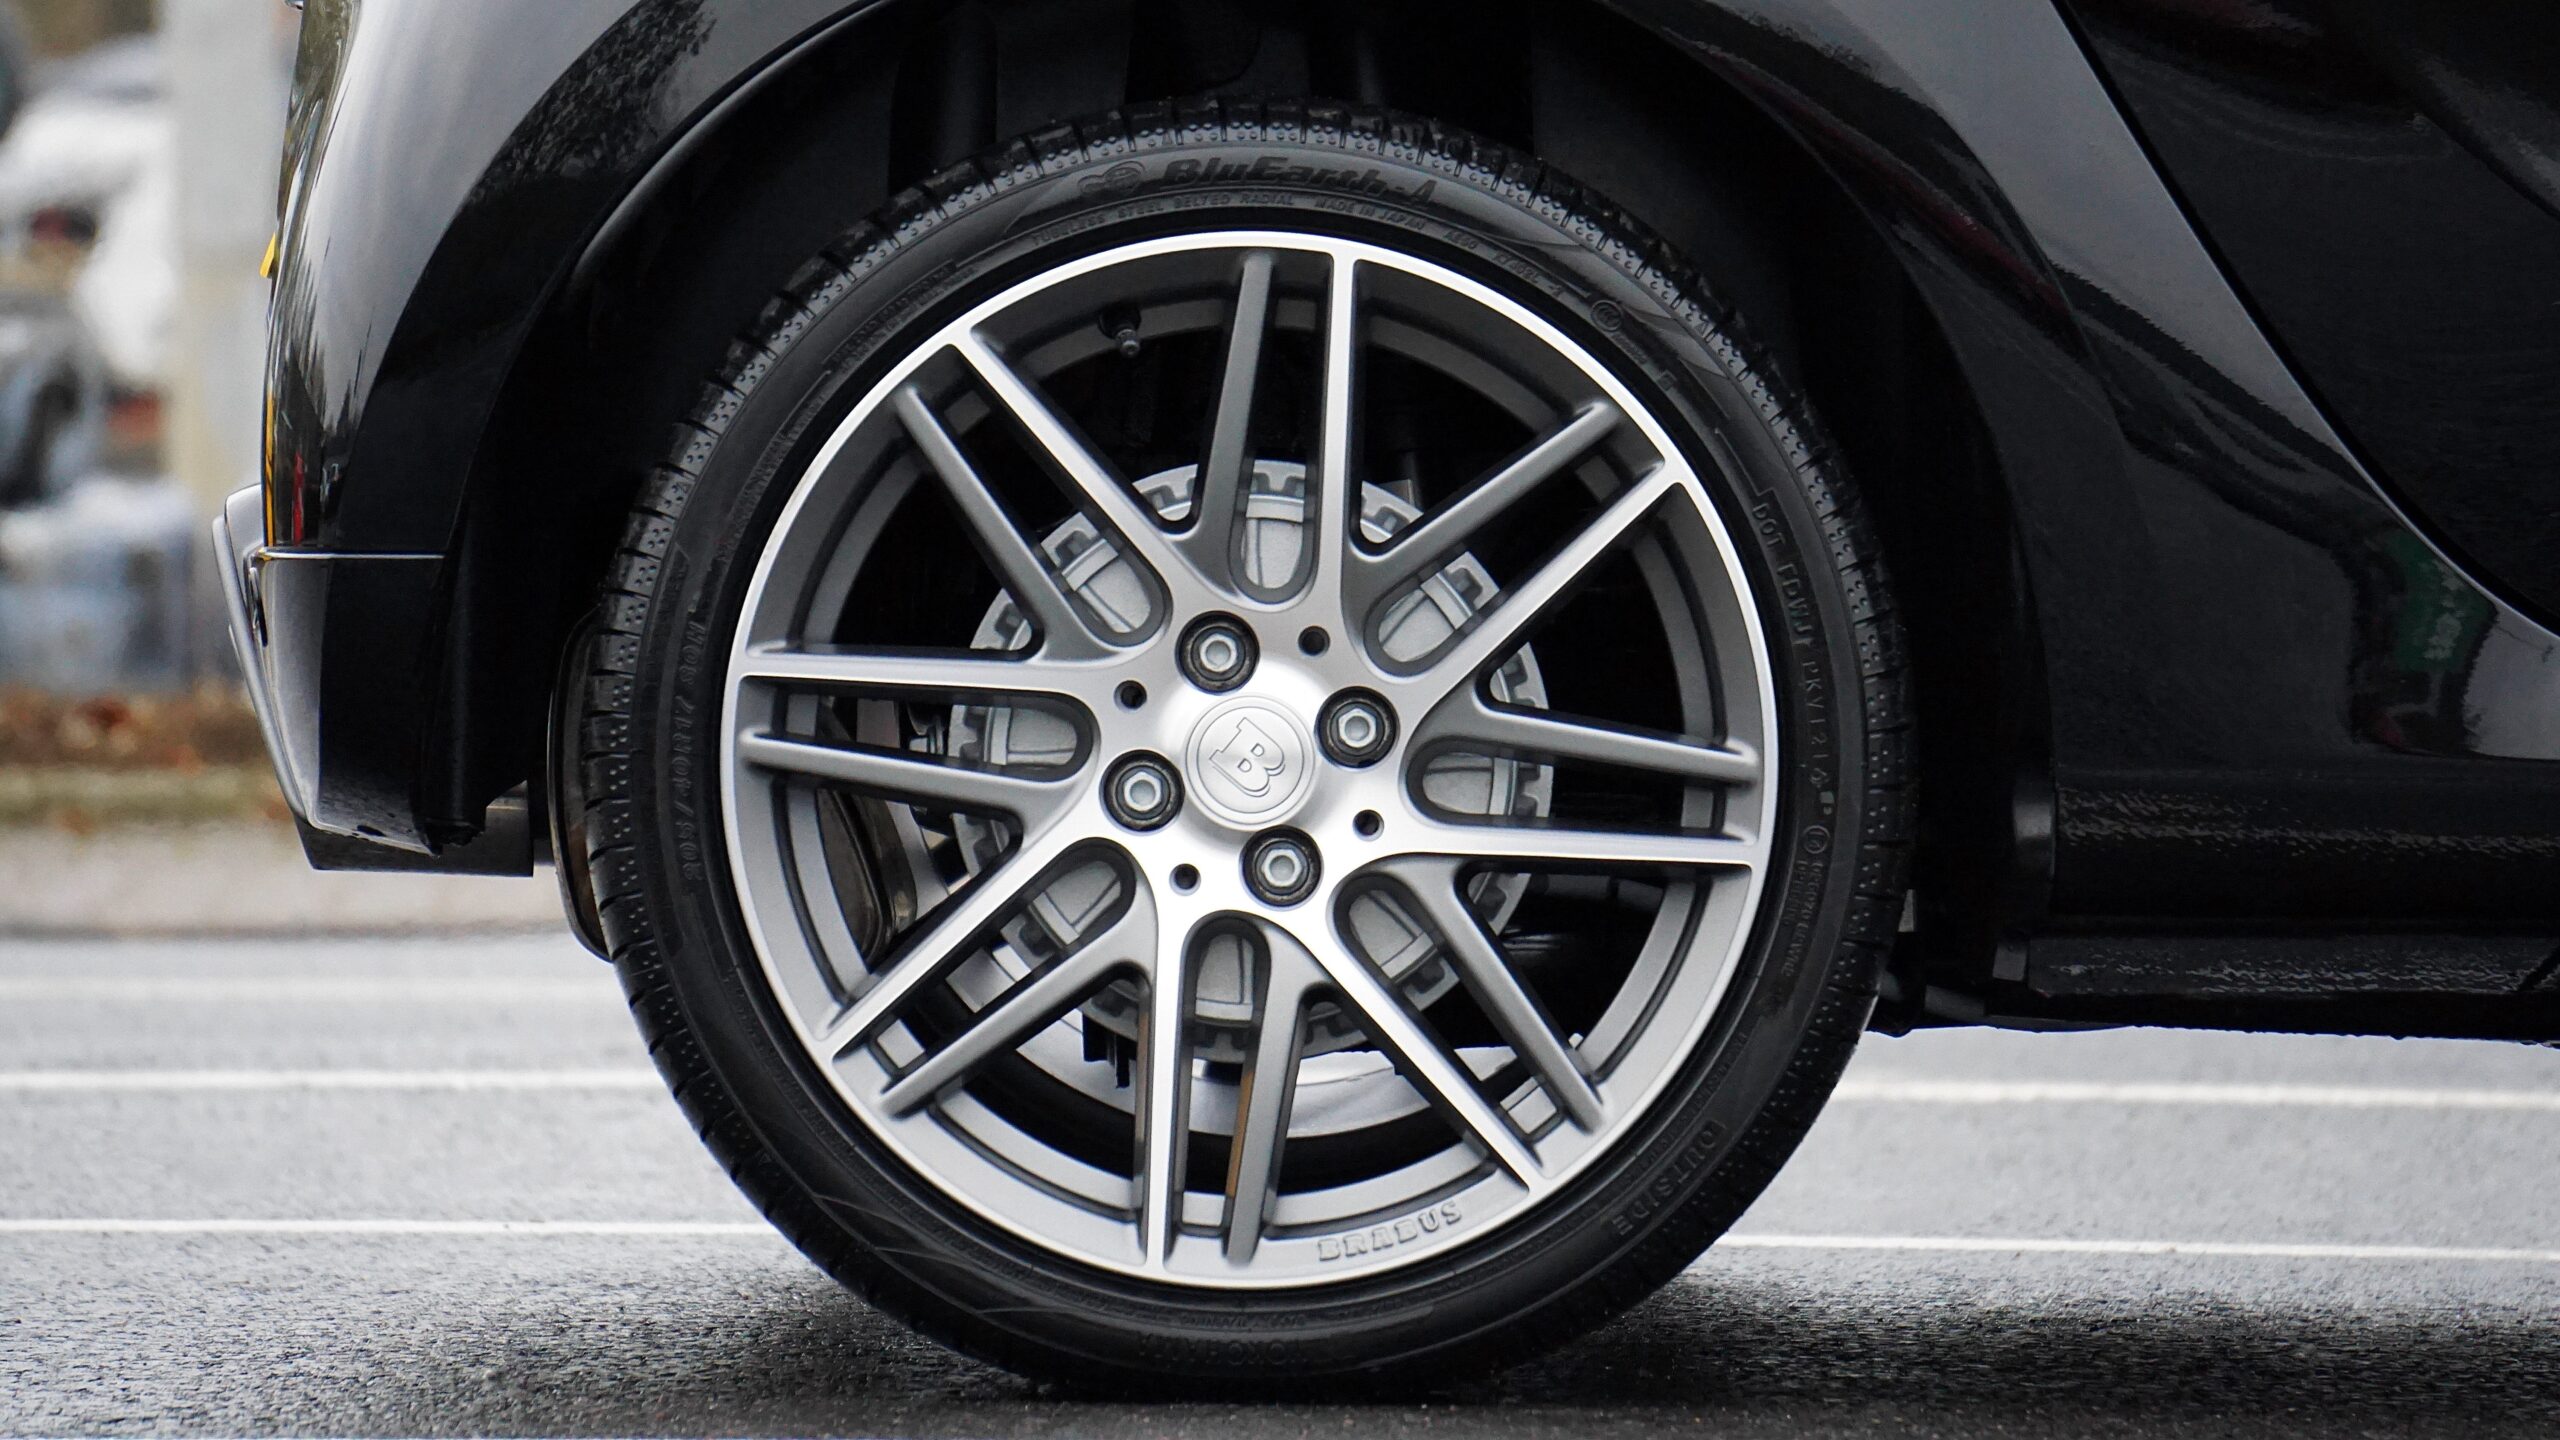 Presiunea pneurilor – Ce trebuie sa stii pentru a conduce in siguranta? -  Blog despre functionalitatea si importanta anvelopelor -